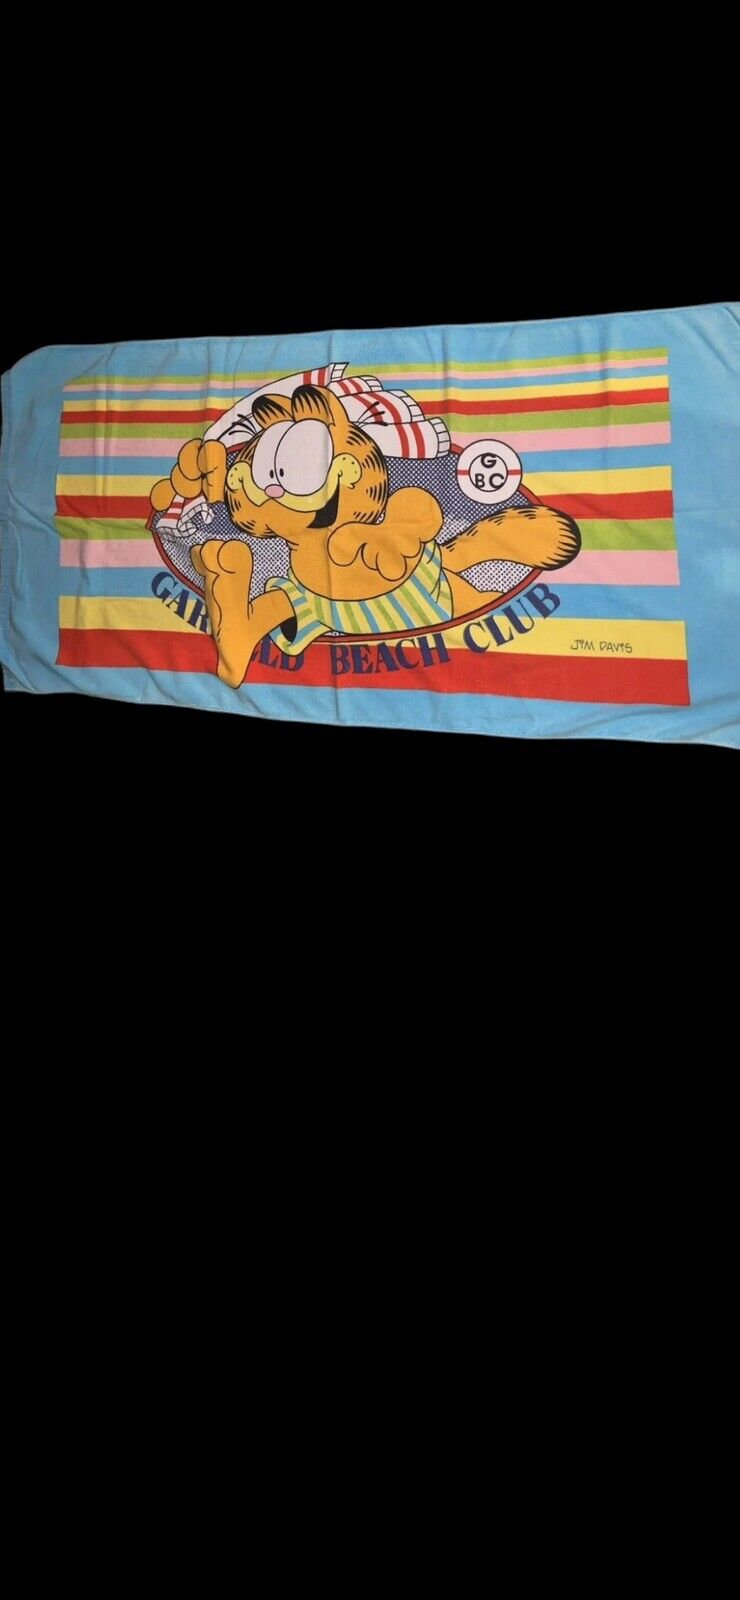 Vintage 1978 Garfield beach towel